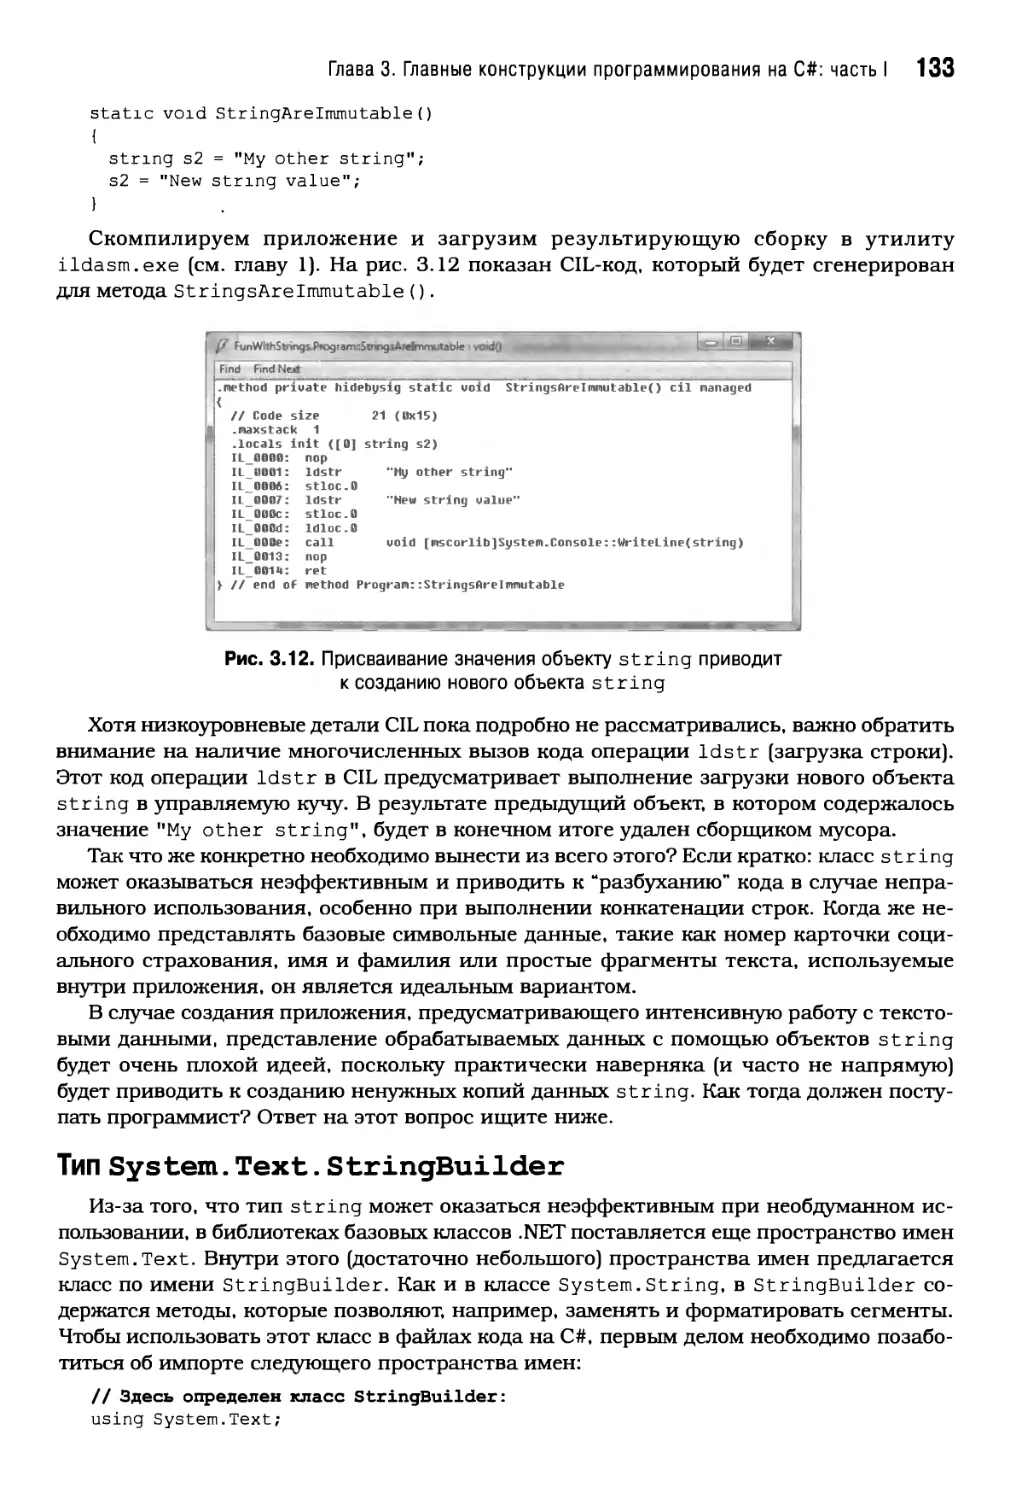 Тип System.Text.StringBuilder